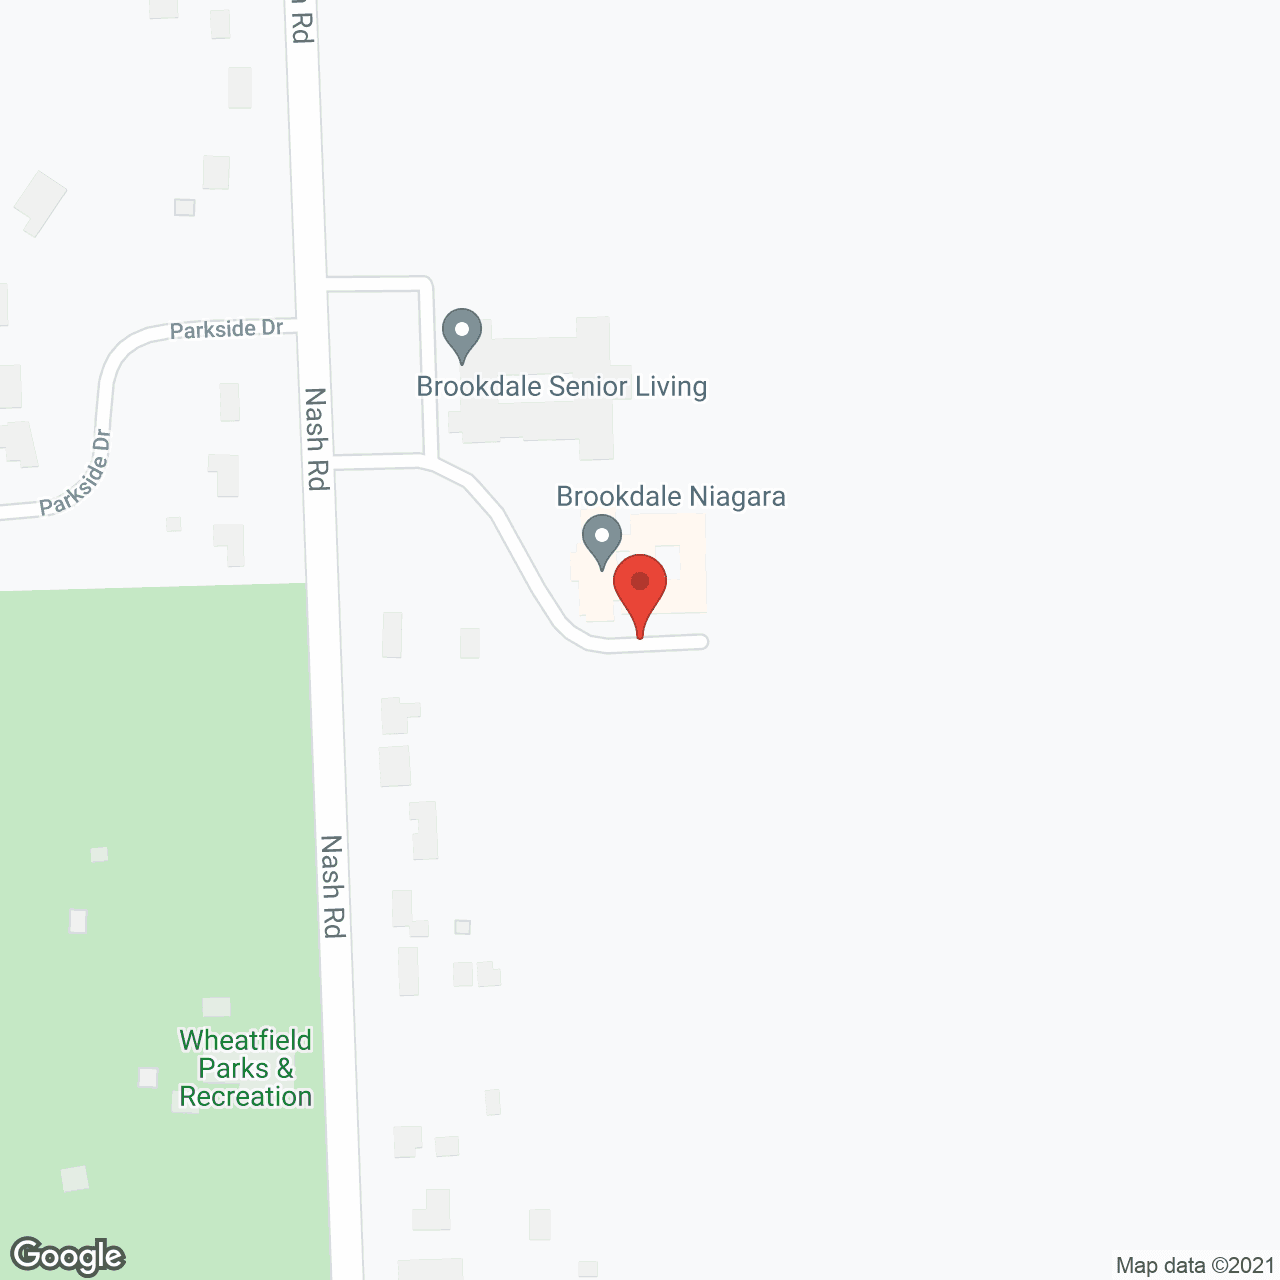 Brookdale Niagara (MC) in google map